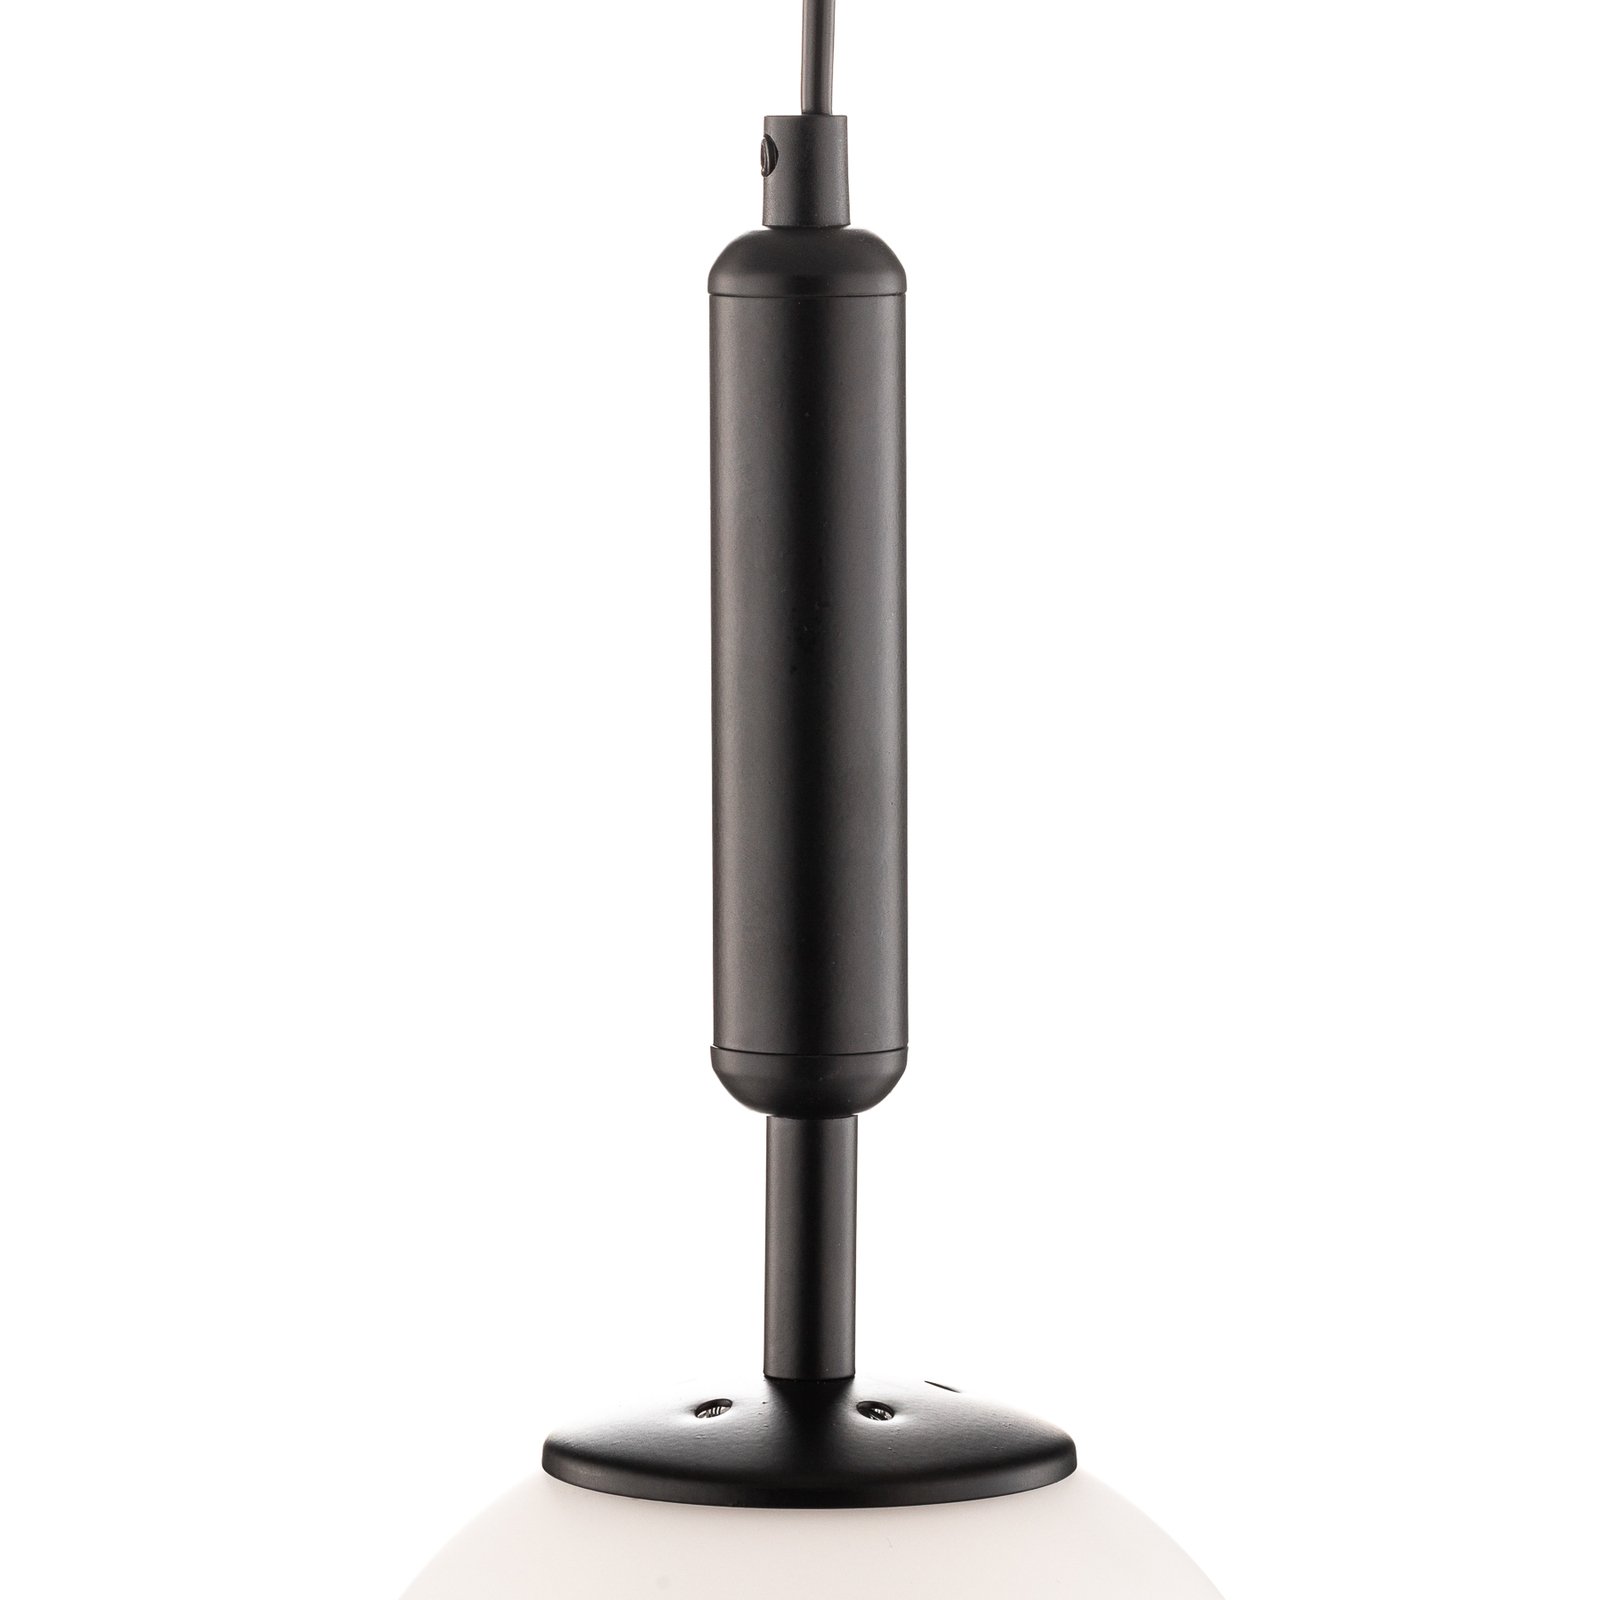 Hanglamp Nalo, 1-lamp, zwart